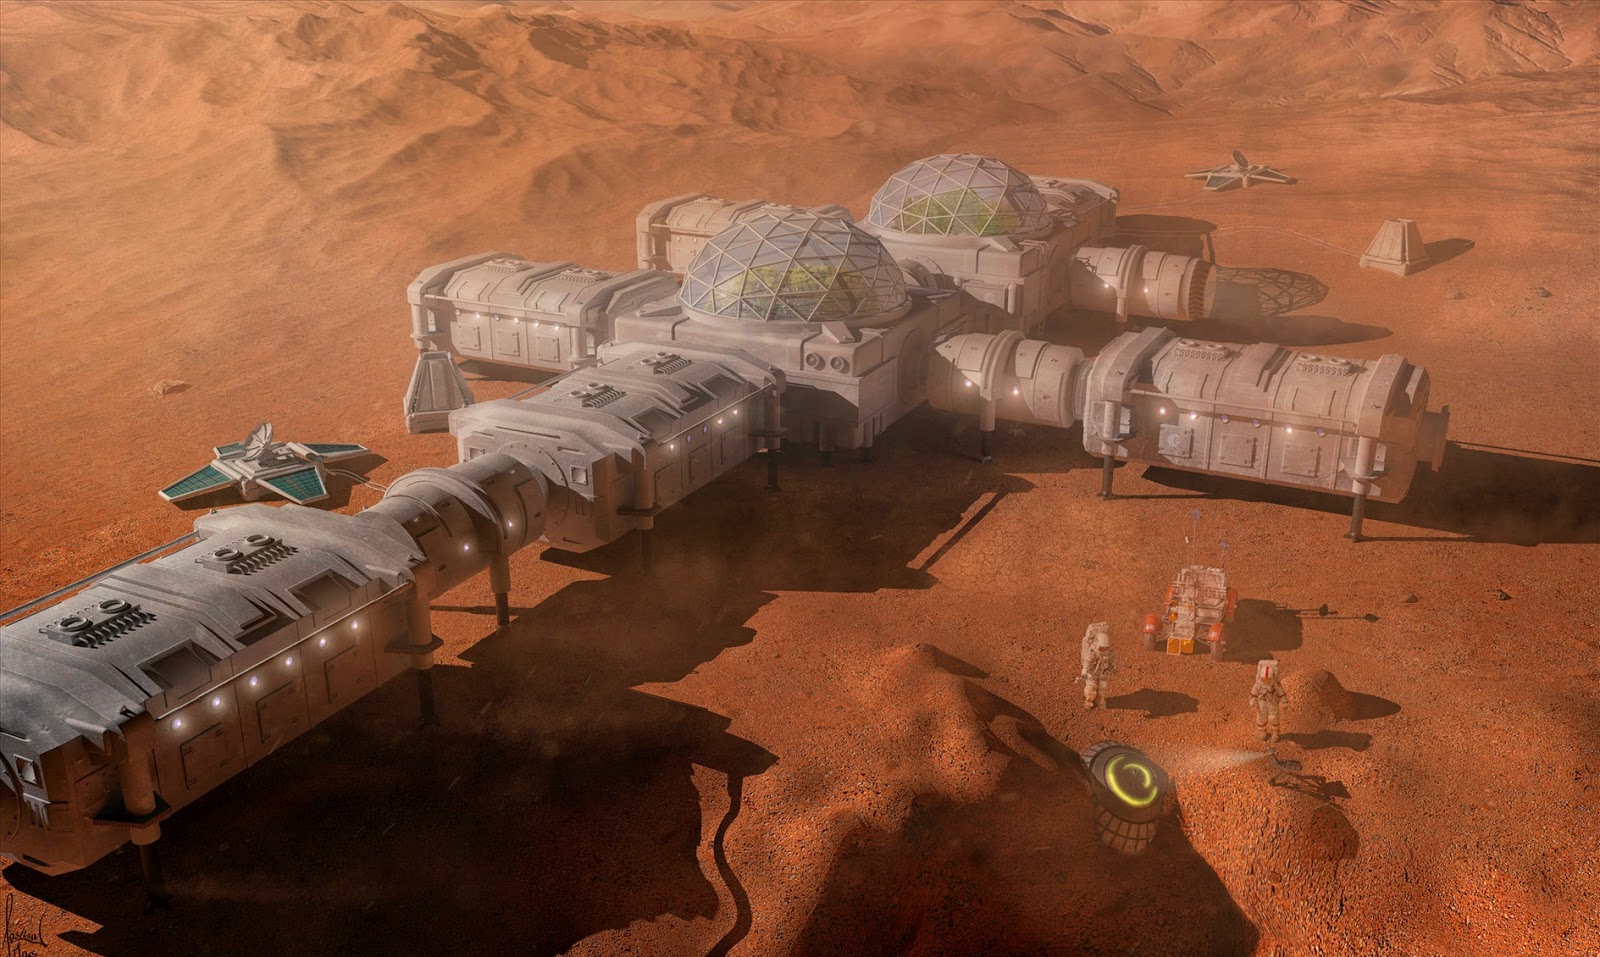 Mars base by Christian Gruner